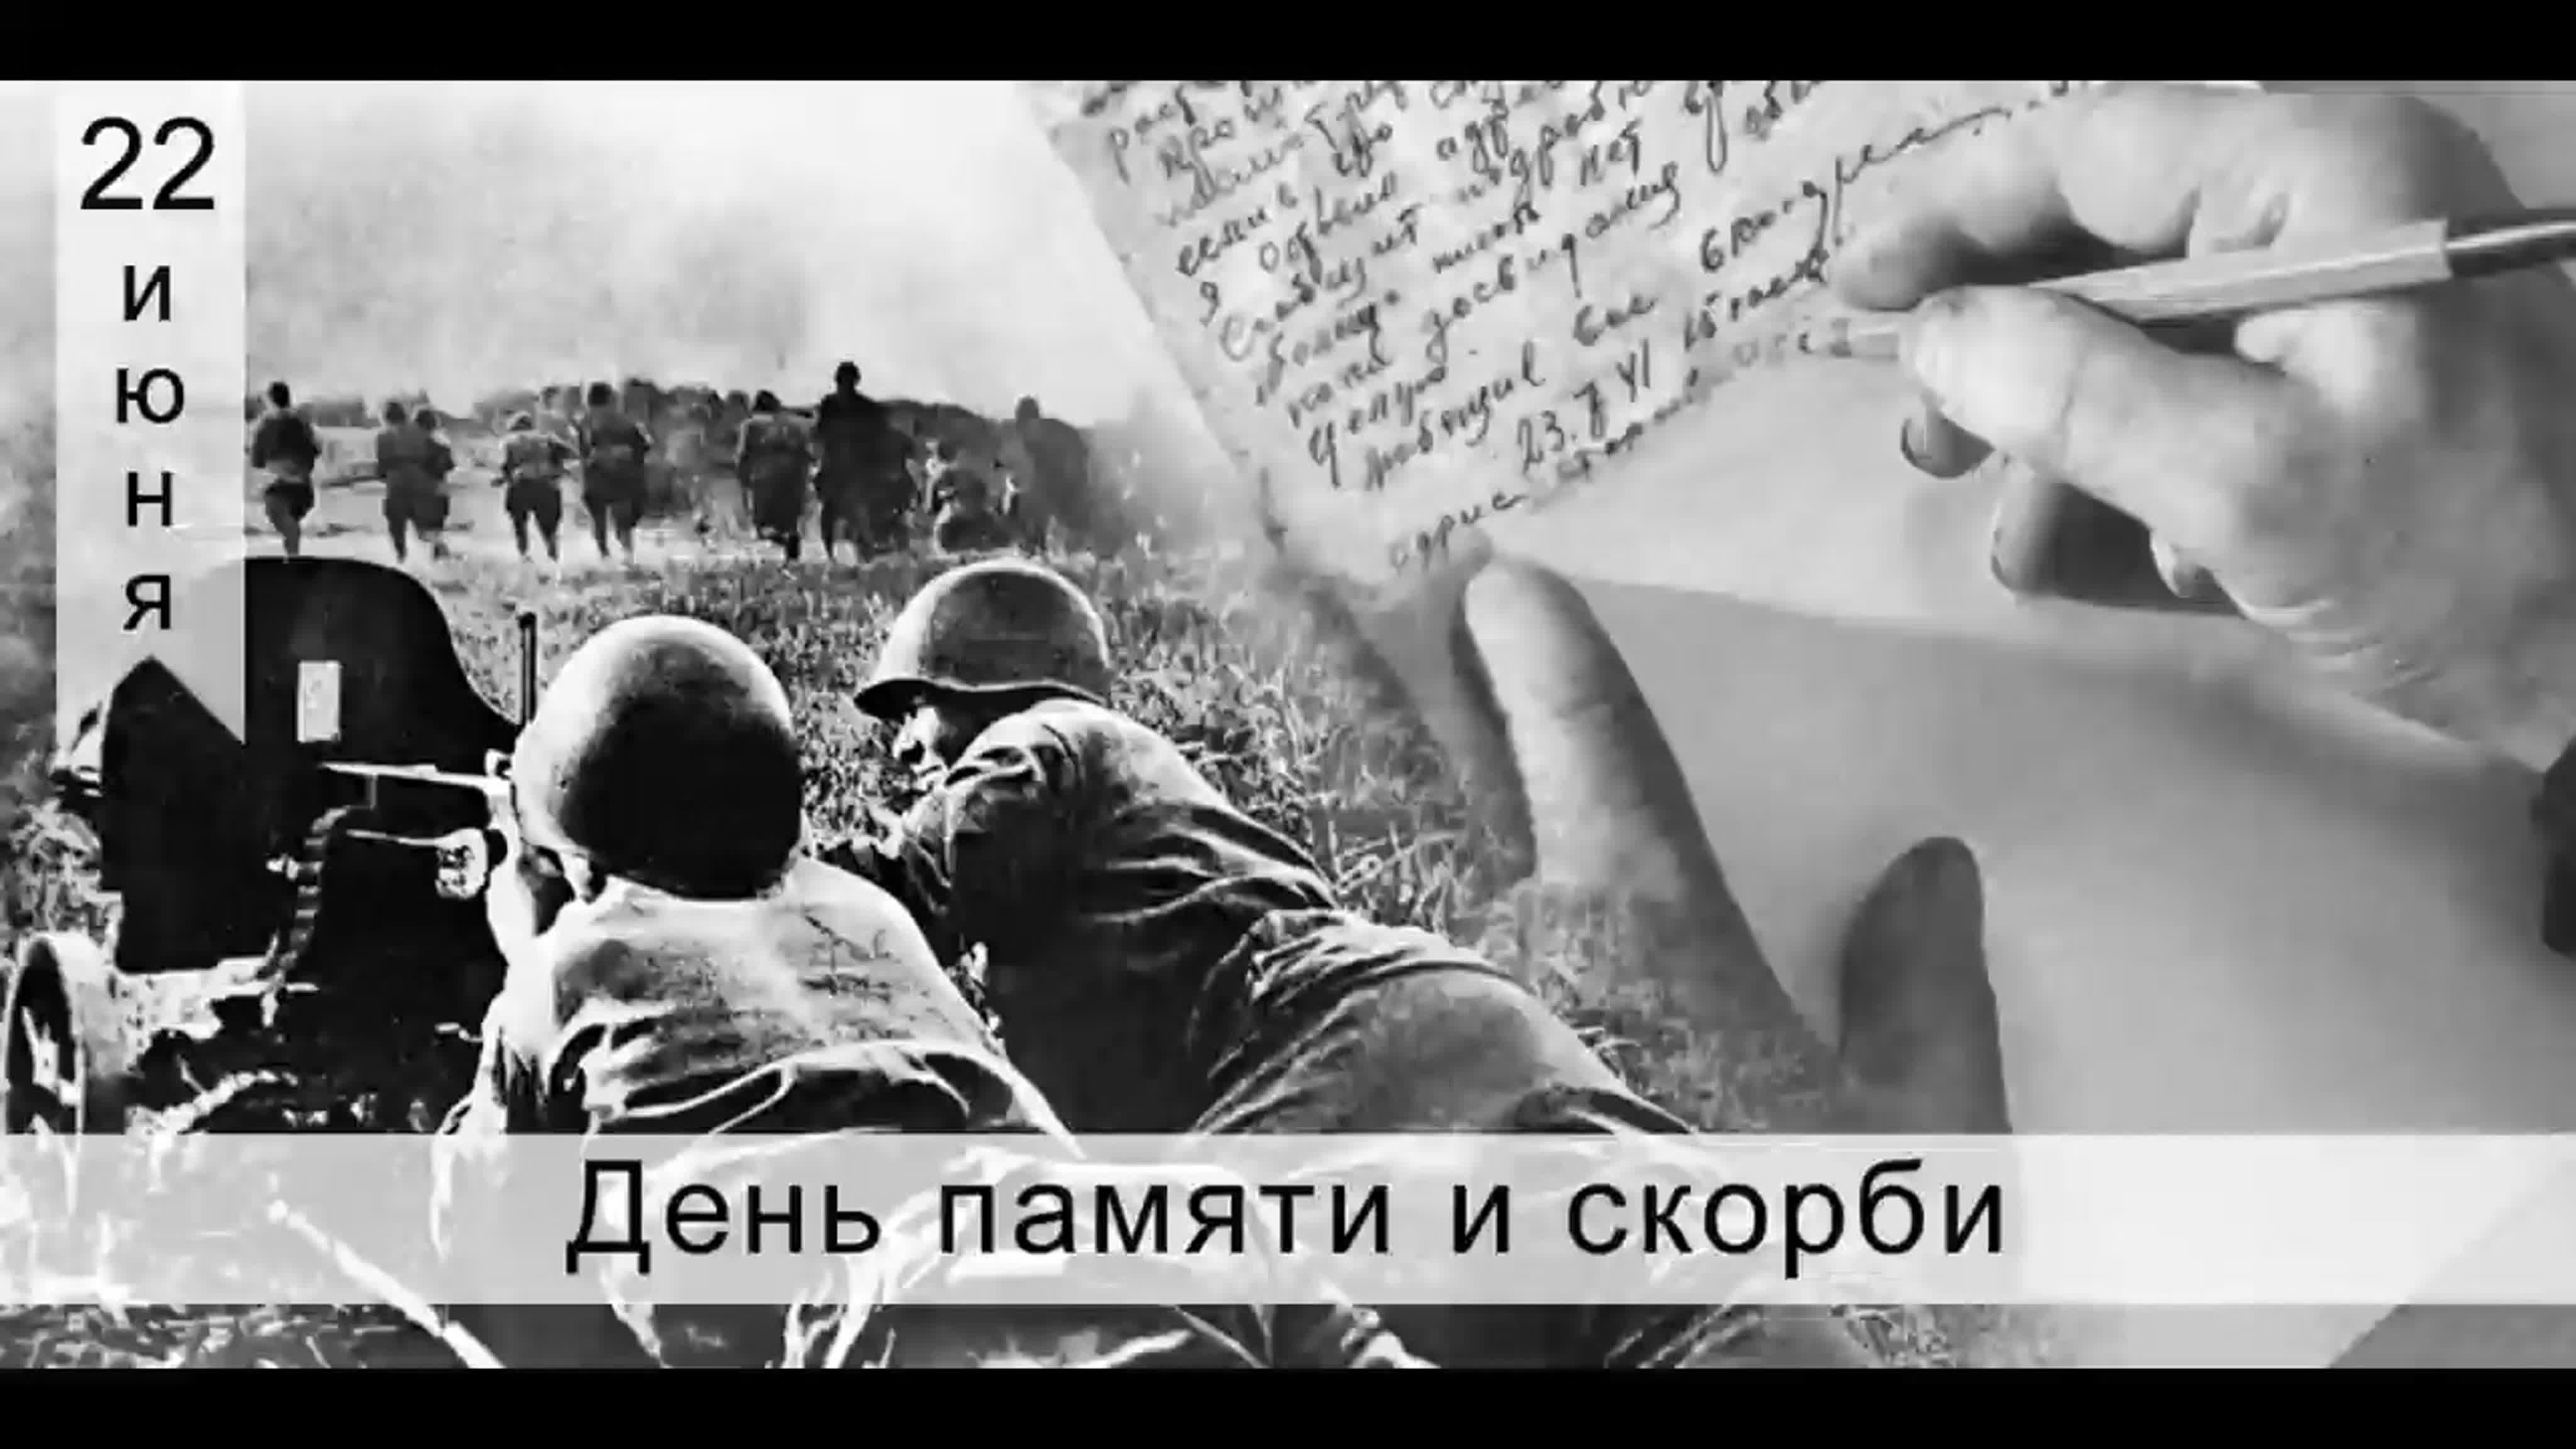 Укажите год когда произошло событие 22 июня. 22.06.1941 Начало ВОВ. 22 Июня день памяти и скорби день начала Великой Отечественной войны.